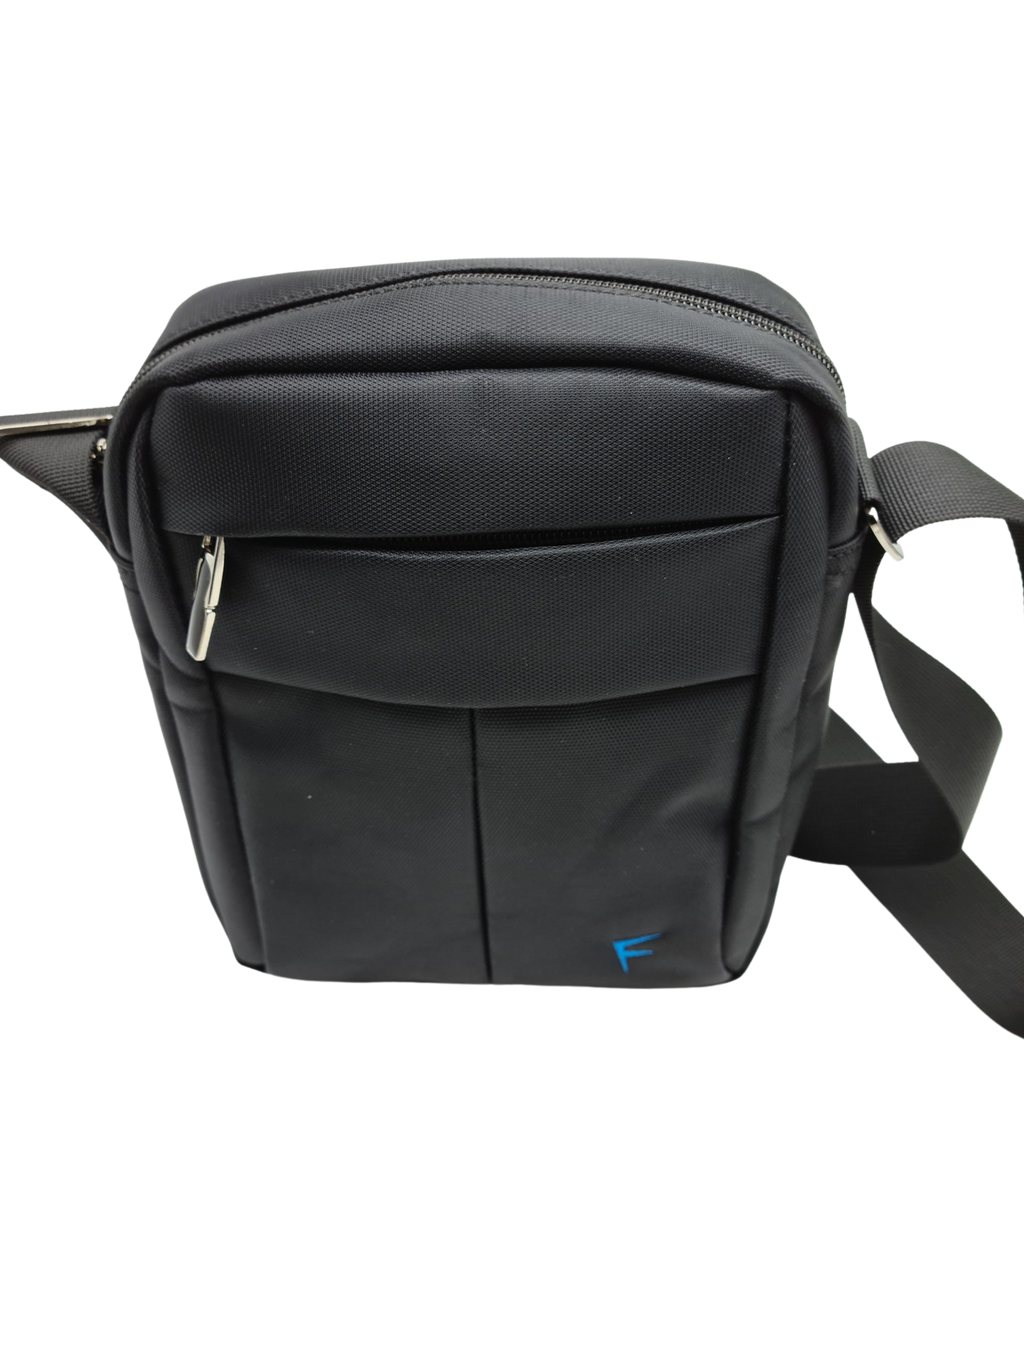 Forecast Design shoulder bag 3069 - Migant